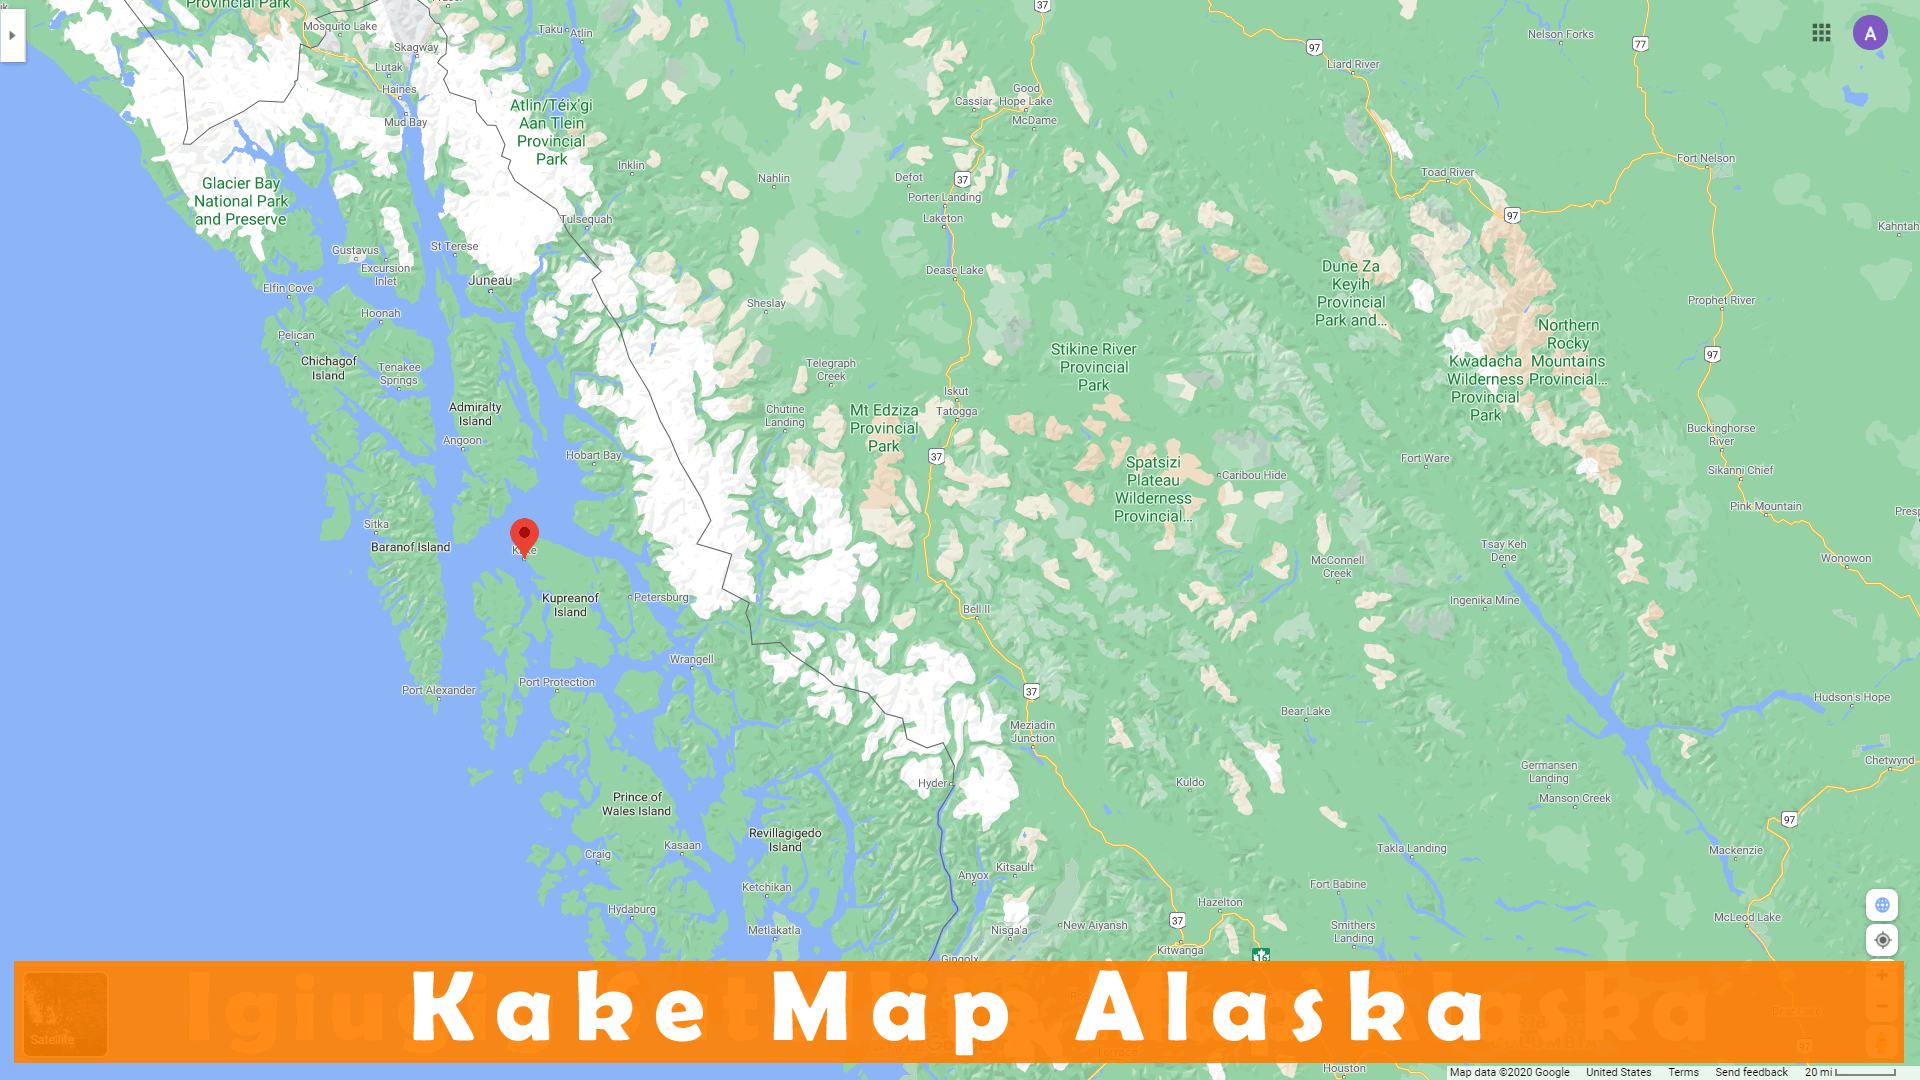 Kake map